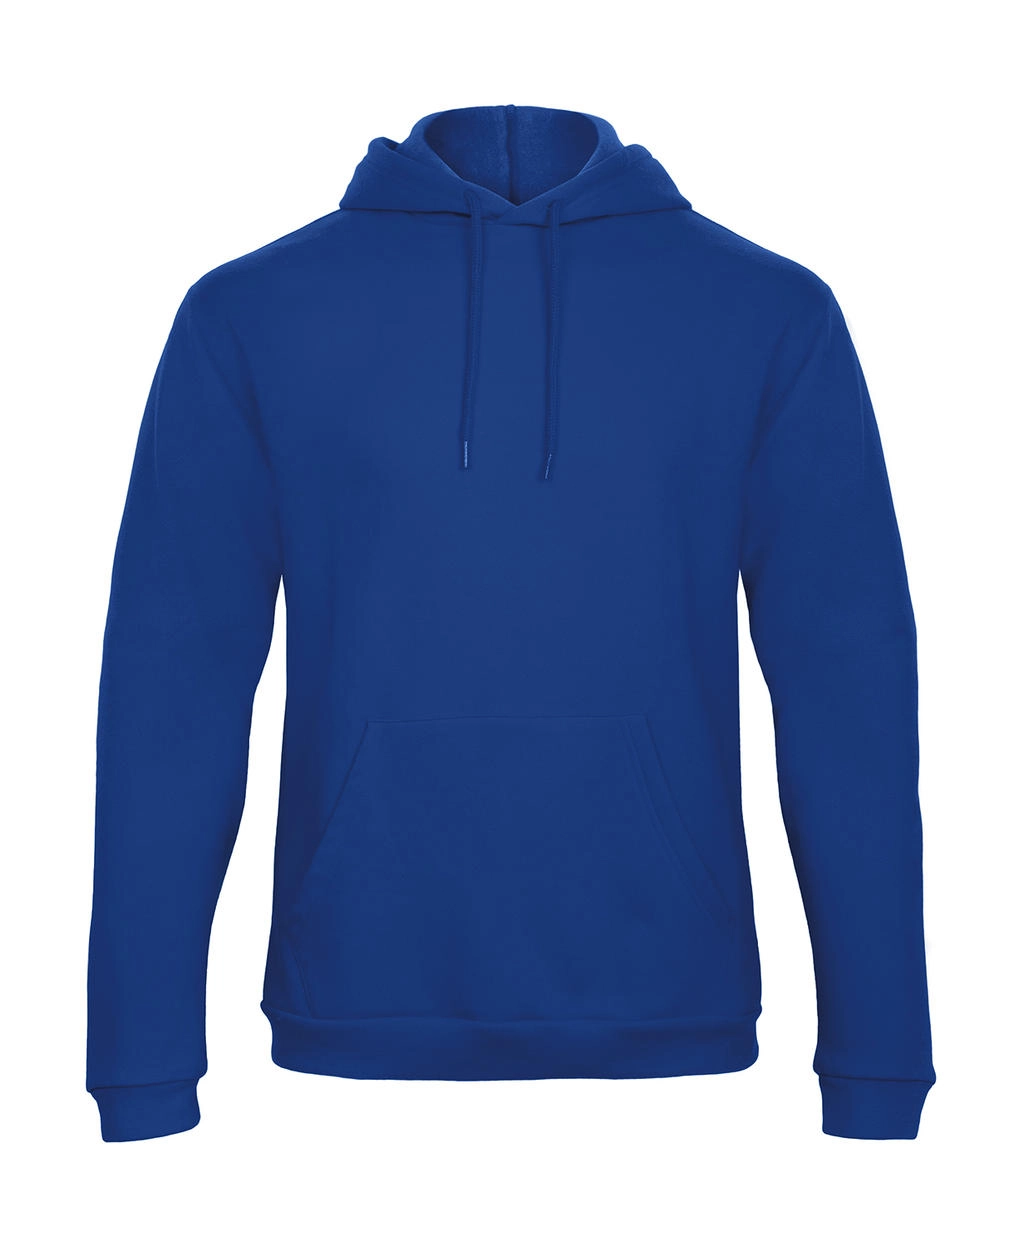 ID.203 50/50 Hooded Sweatshirt Unisex  zum Besticken und Bedrucken in der Farbe Royal mit Ihren Logo, Schriftzug oder Motiv.